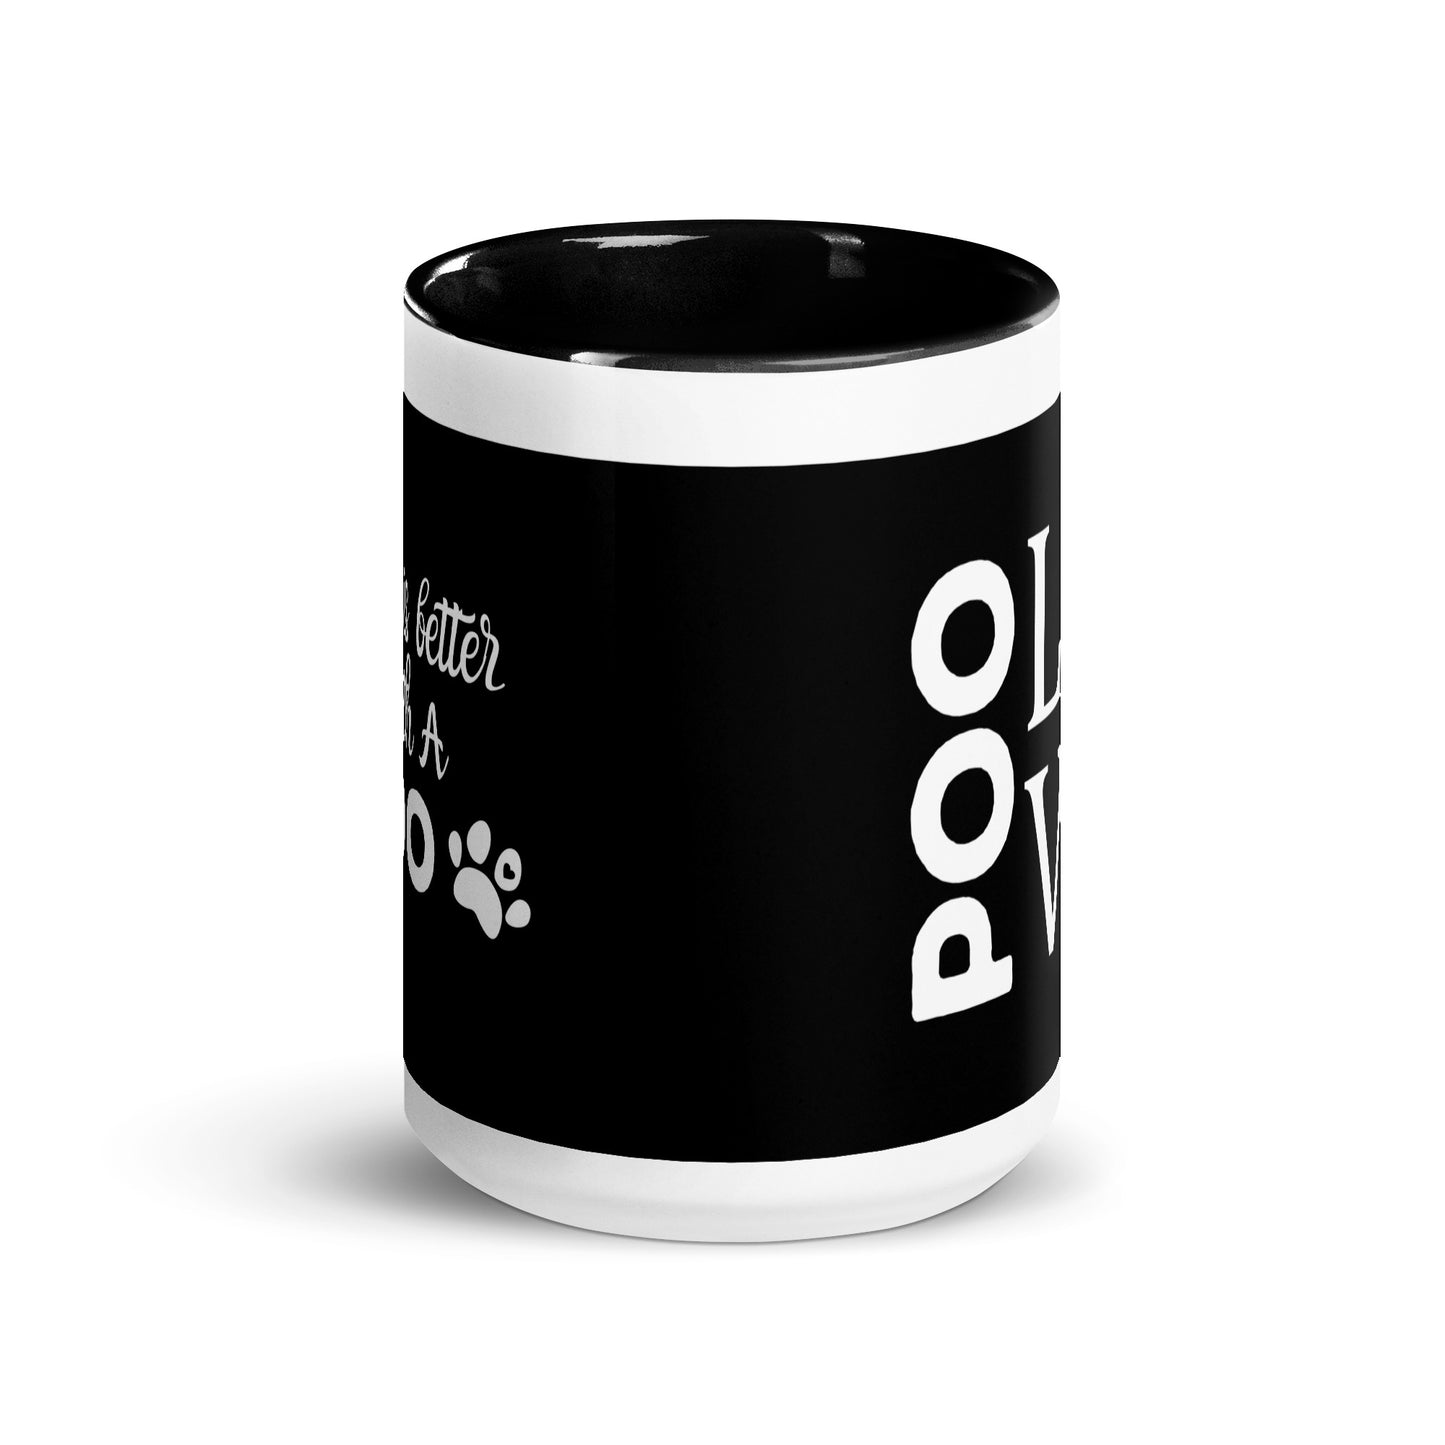 "Poo Love 2" mug in black